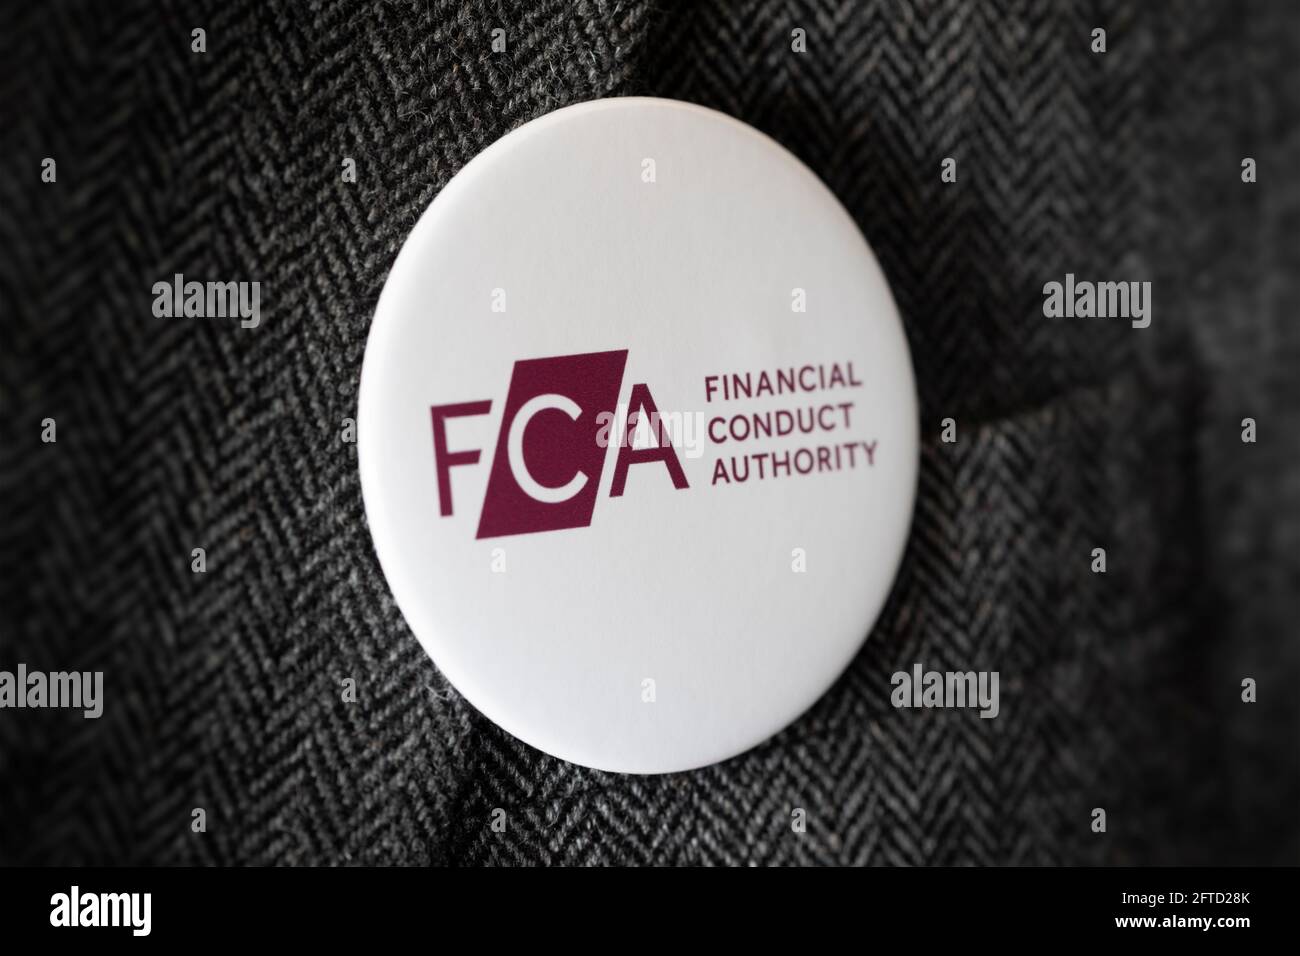 Una insignia de botón con el logotipo de FCA Financial Conduct Authority atada a una chaqueta de traje. Foto de stock